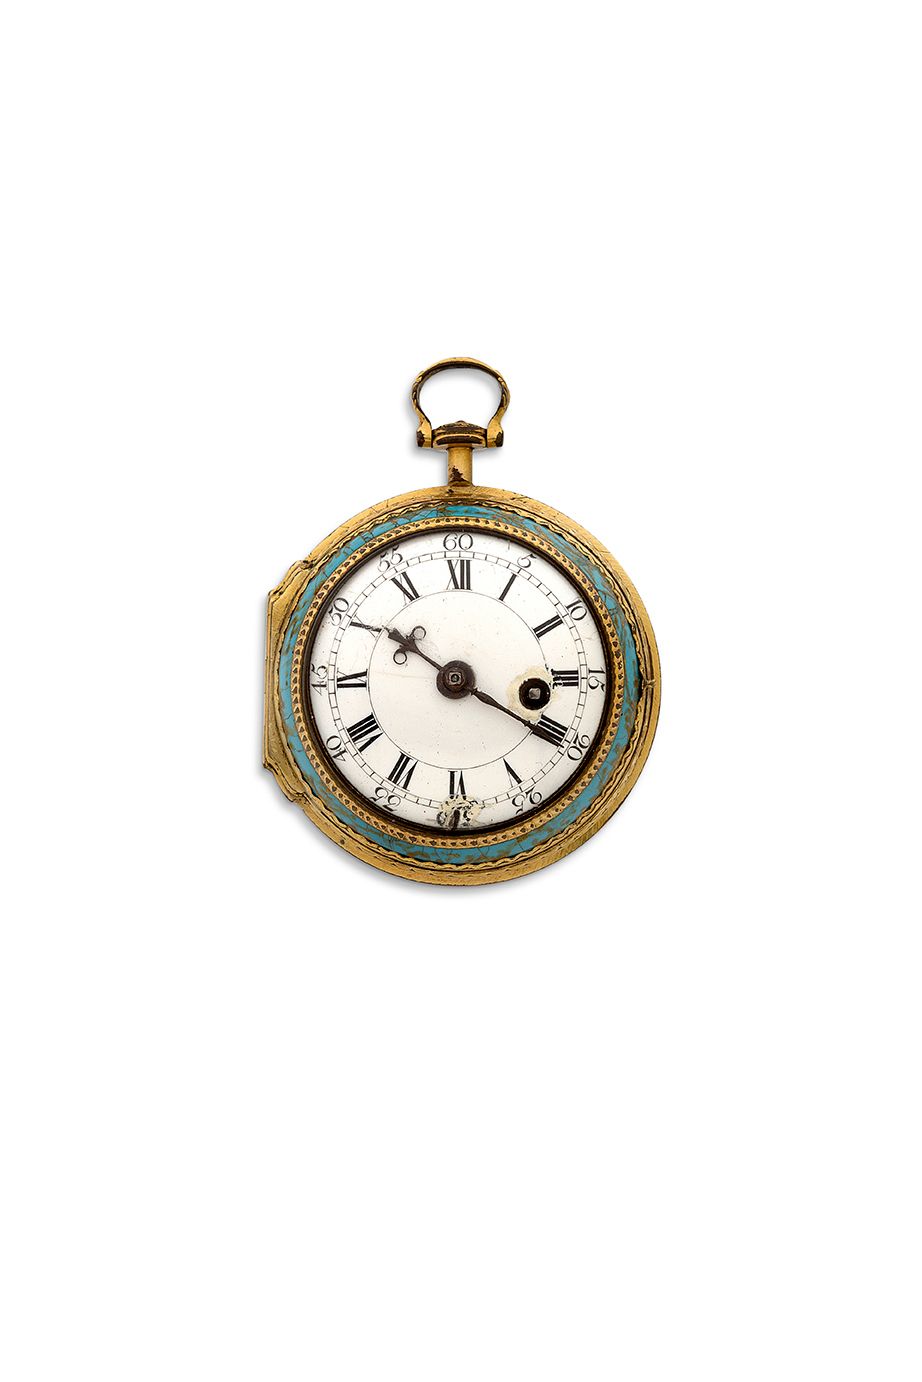 Rich. JOHNSON, London 
Reloj "Polissonne" de metal dorado y esmaltado con una es&hellip;